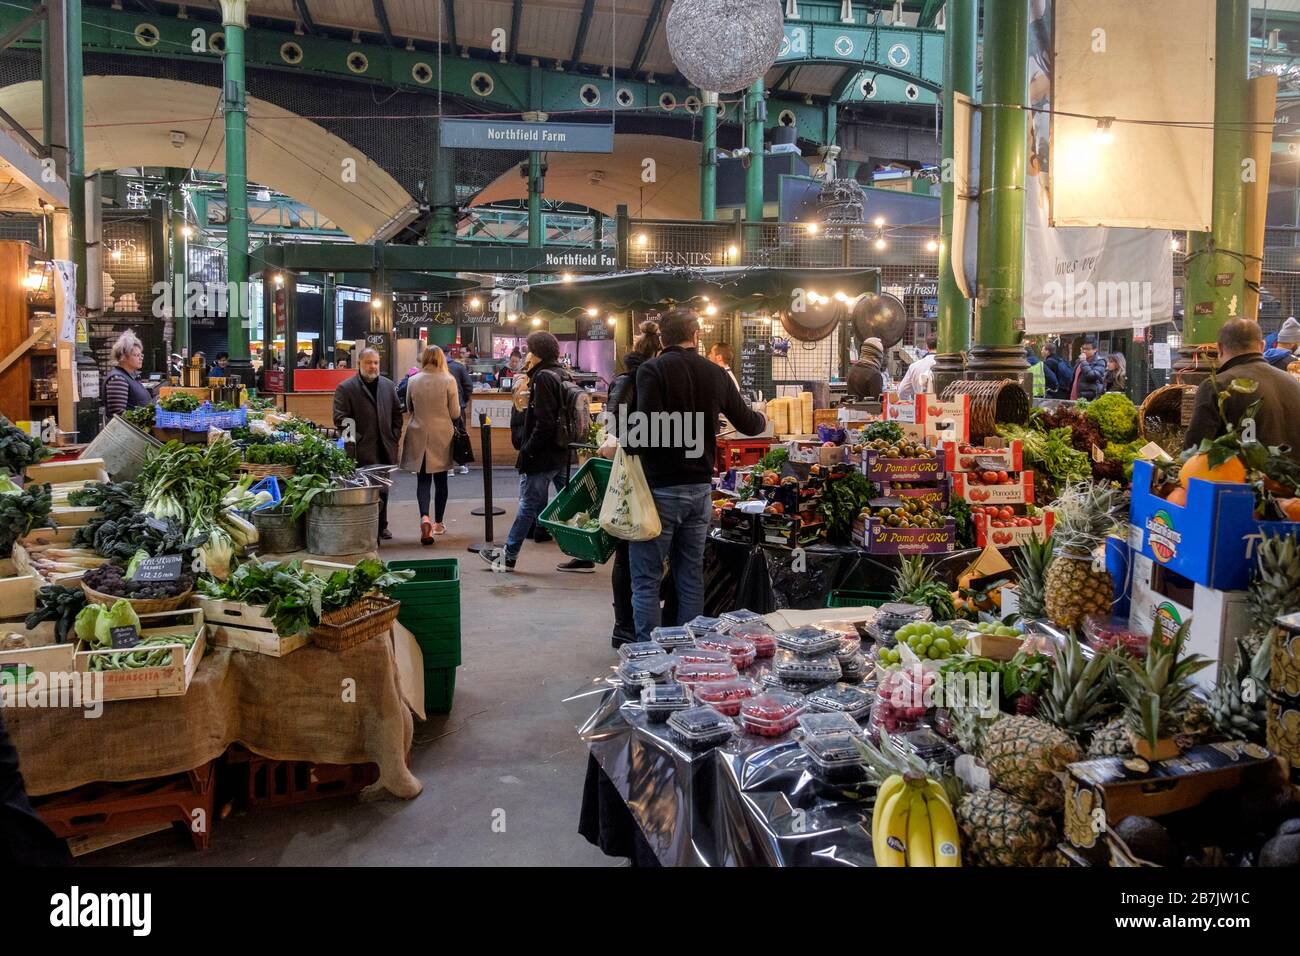 Londra, Regno Unito. 16 marzo 2020. Borough Market, normalmente vivo con i visitatori dei suoi banchi di cibo e prodotti è insolitamente tranquilla, come le paure del virus Corona tenere la gente lontano dalle attrazioni della città. Foto Stock